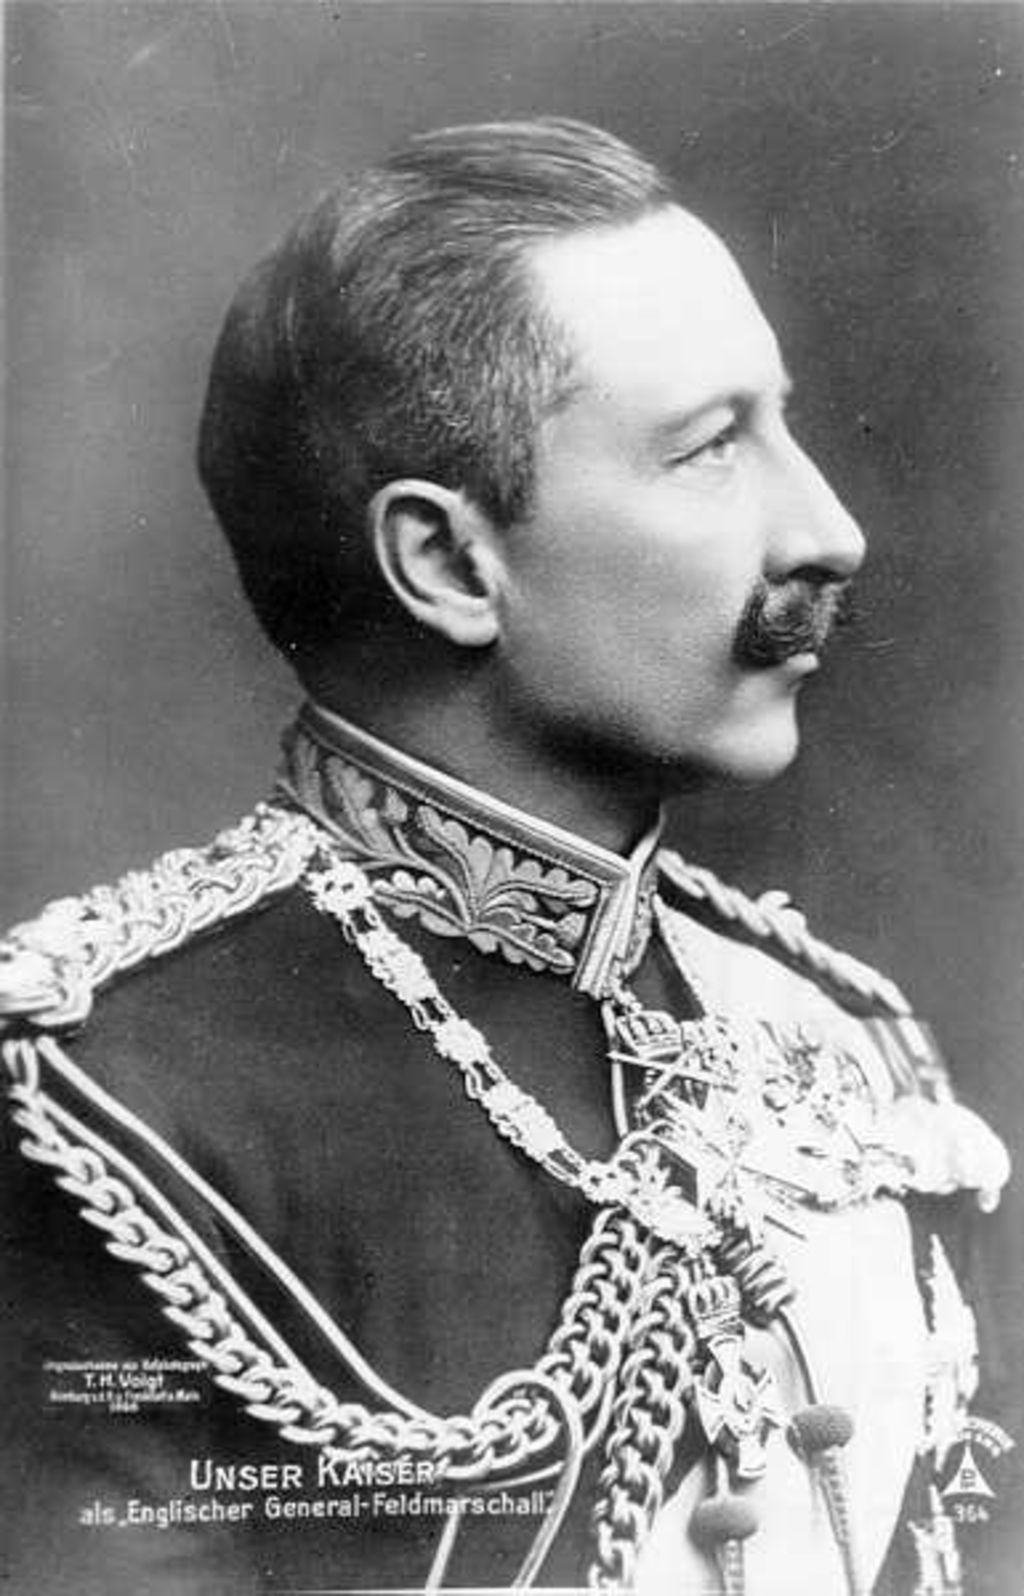 Unser Kaiser als "Englischer General-Feldmarschall"